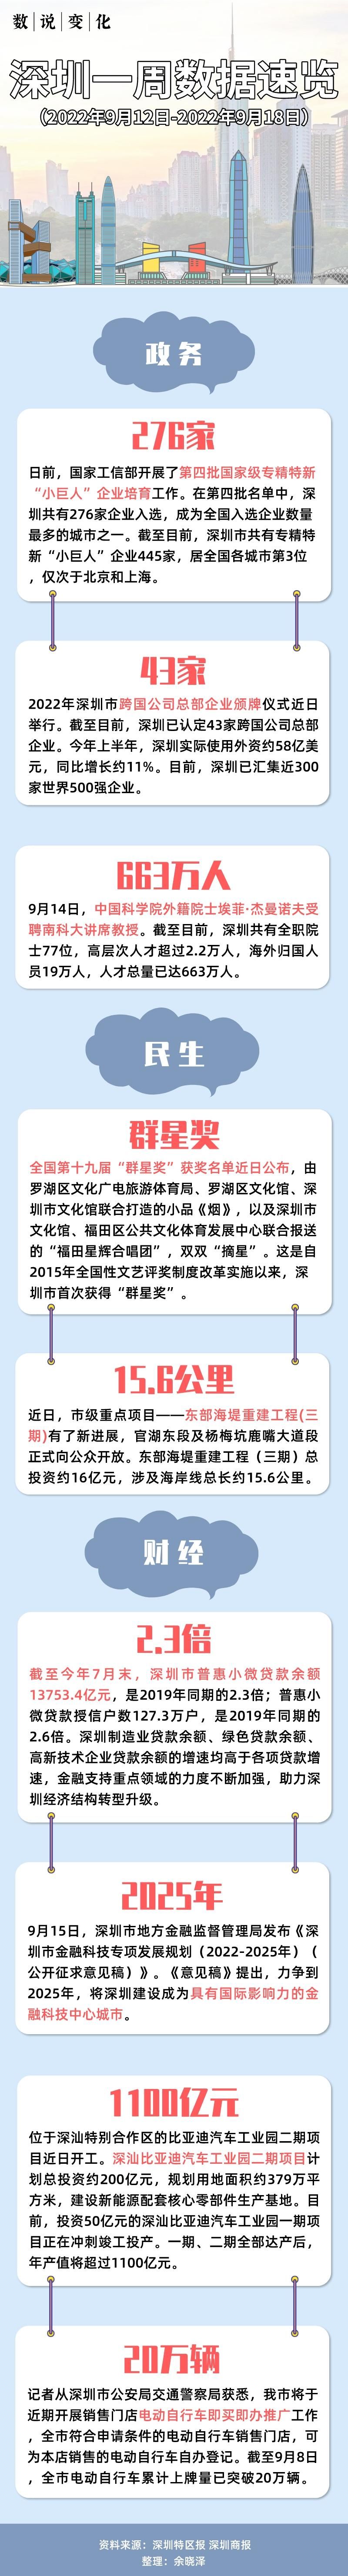 数说变化 深圳一周数据速览 9月12日 9月18日